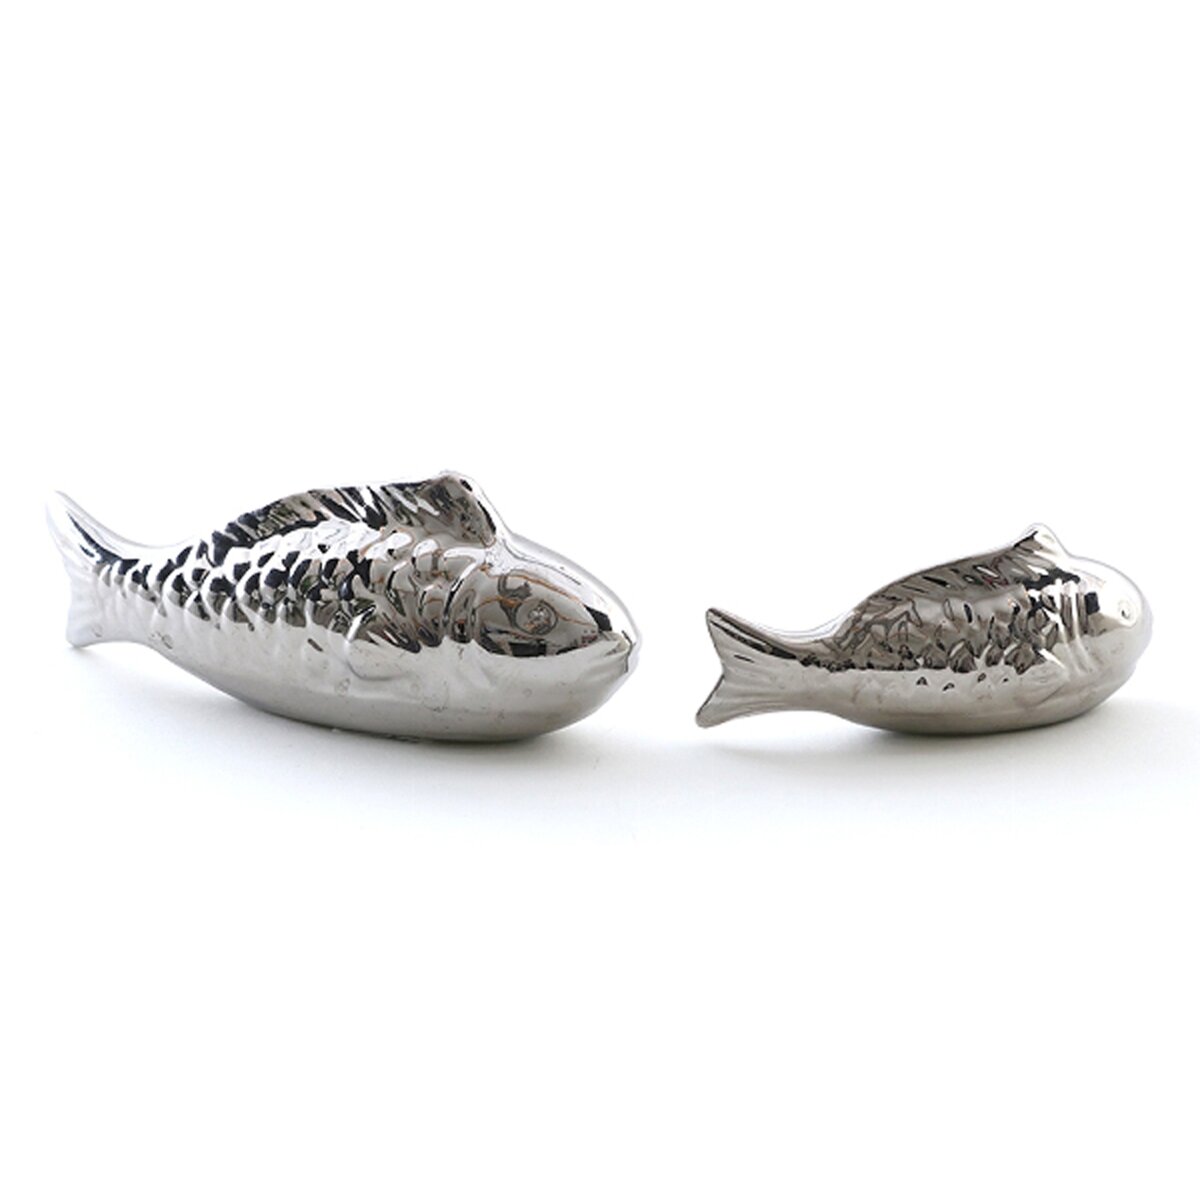 Koi-karpfen 2 Stück schwimmend Porzellan glasiert Teichdeko Fischfigur 